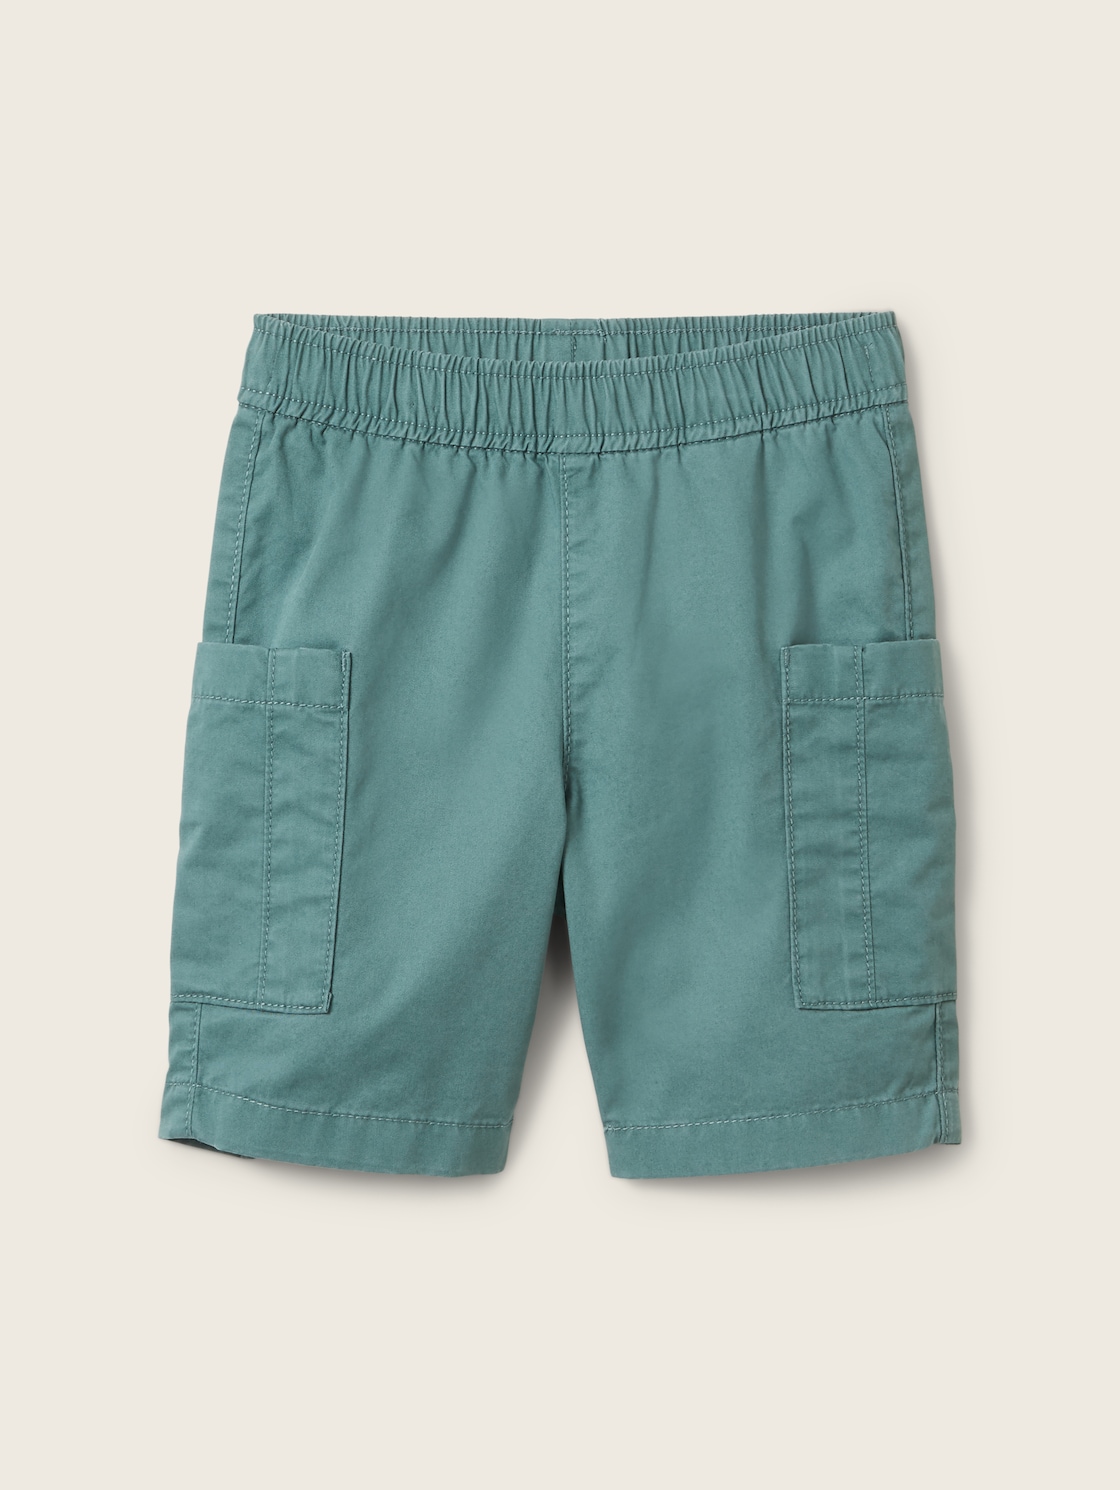 TOM TAILOR Jungen Cargo Shorts, grün, Uni, Gr. 122 von Tom Tailor